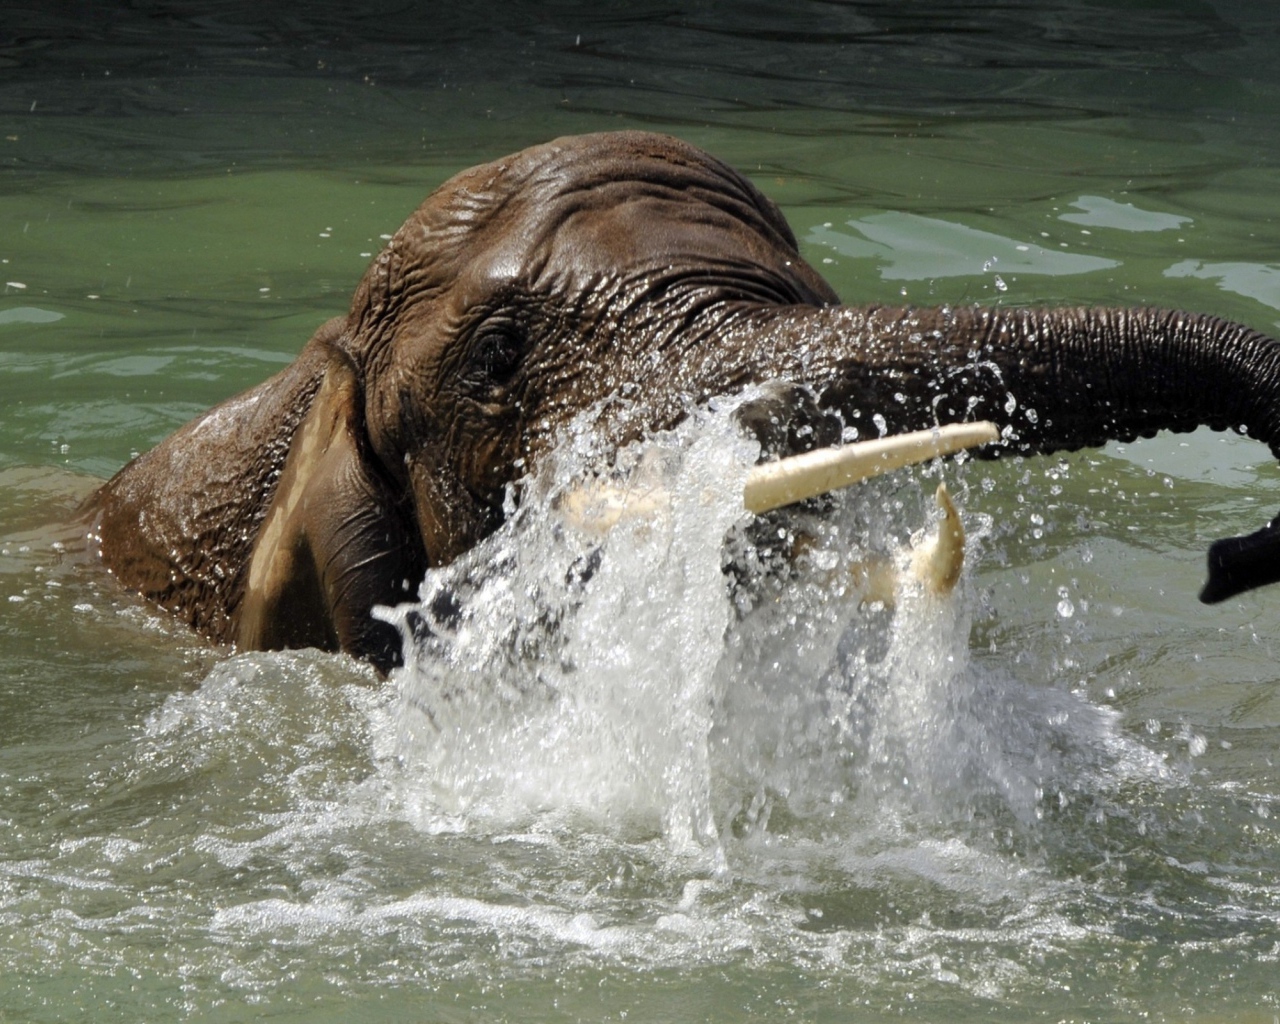 Слон плывет в воде